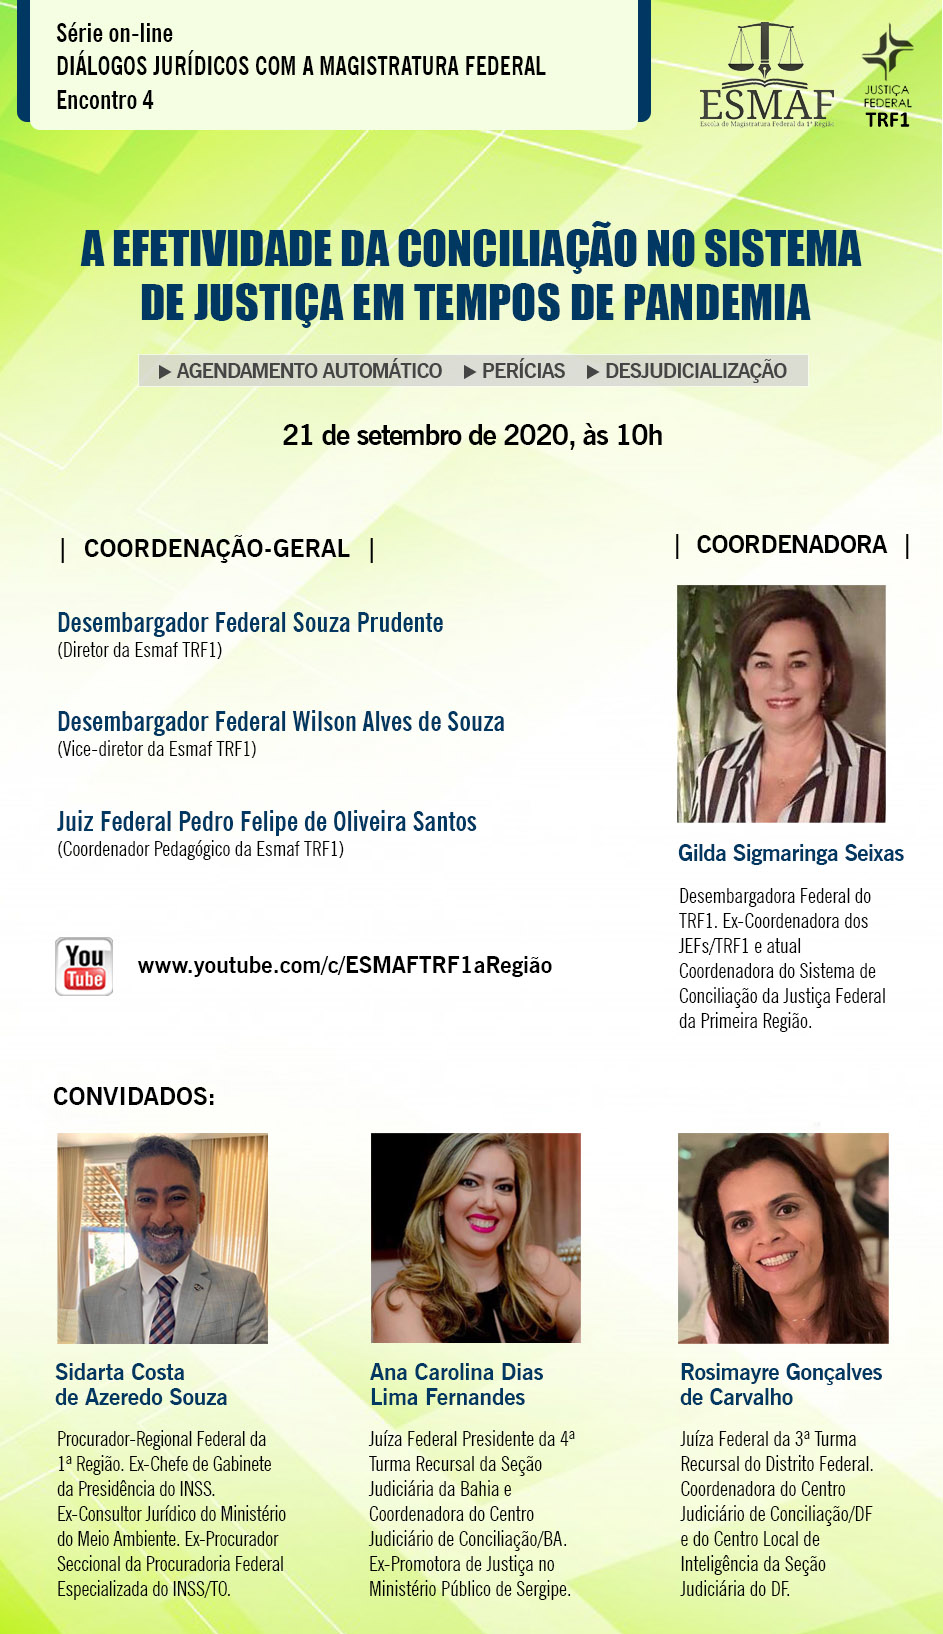 INSTITUCIONAL: Acompanhe hoje o encontro da Esmaf sobre conciliação em tempos de pandemia